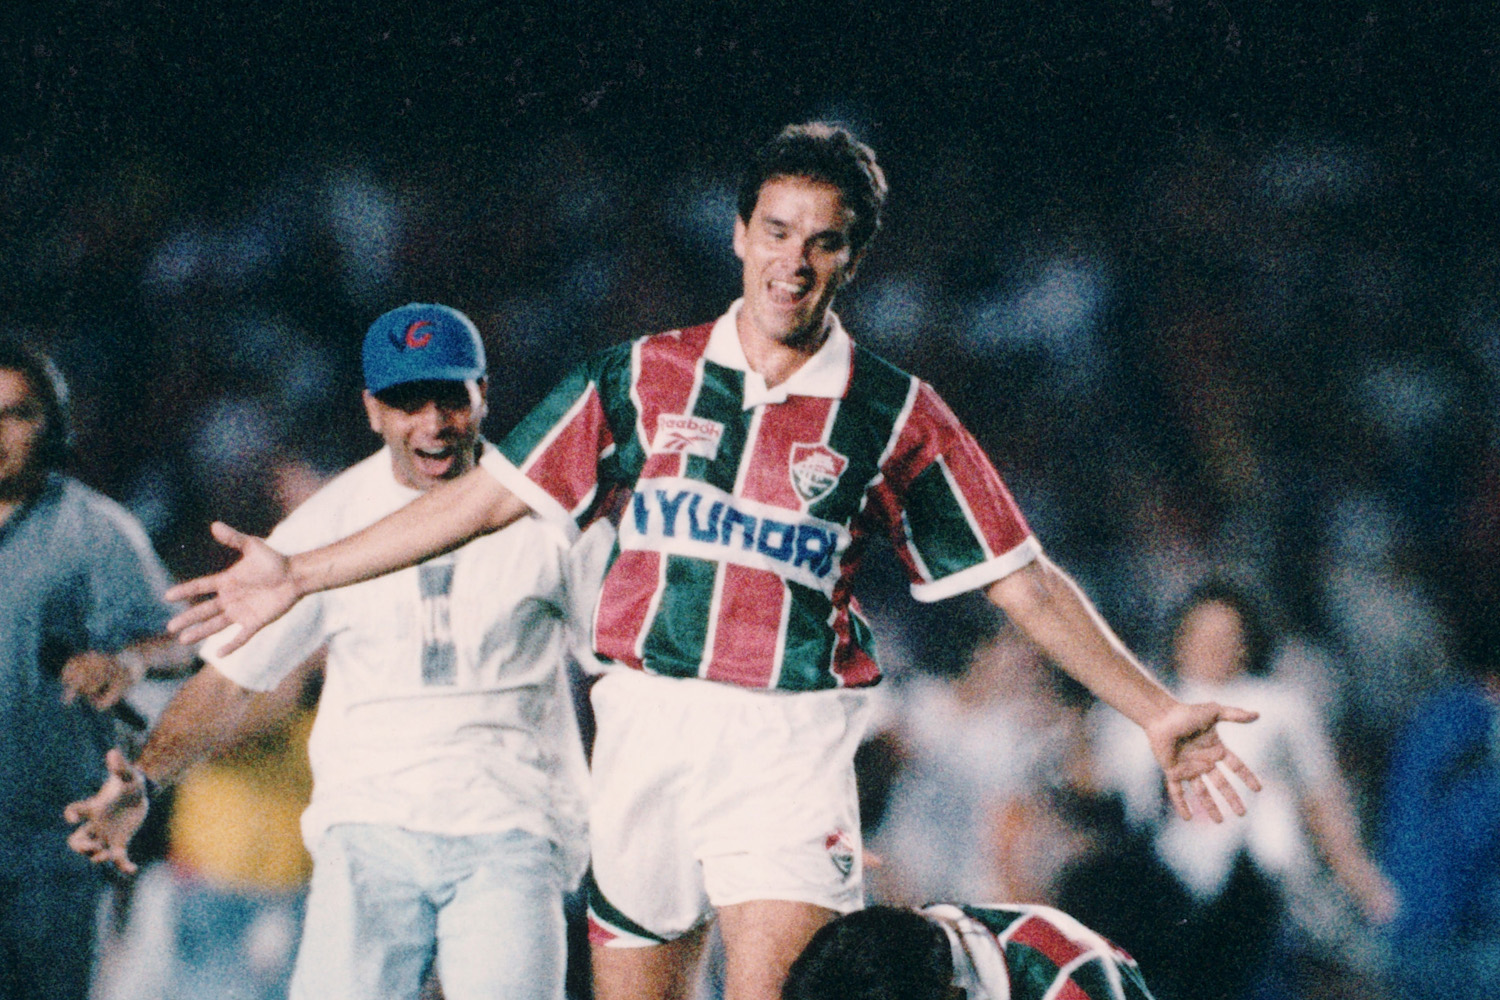 Futebol Brasileiro anos 90